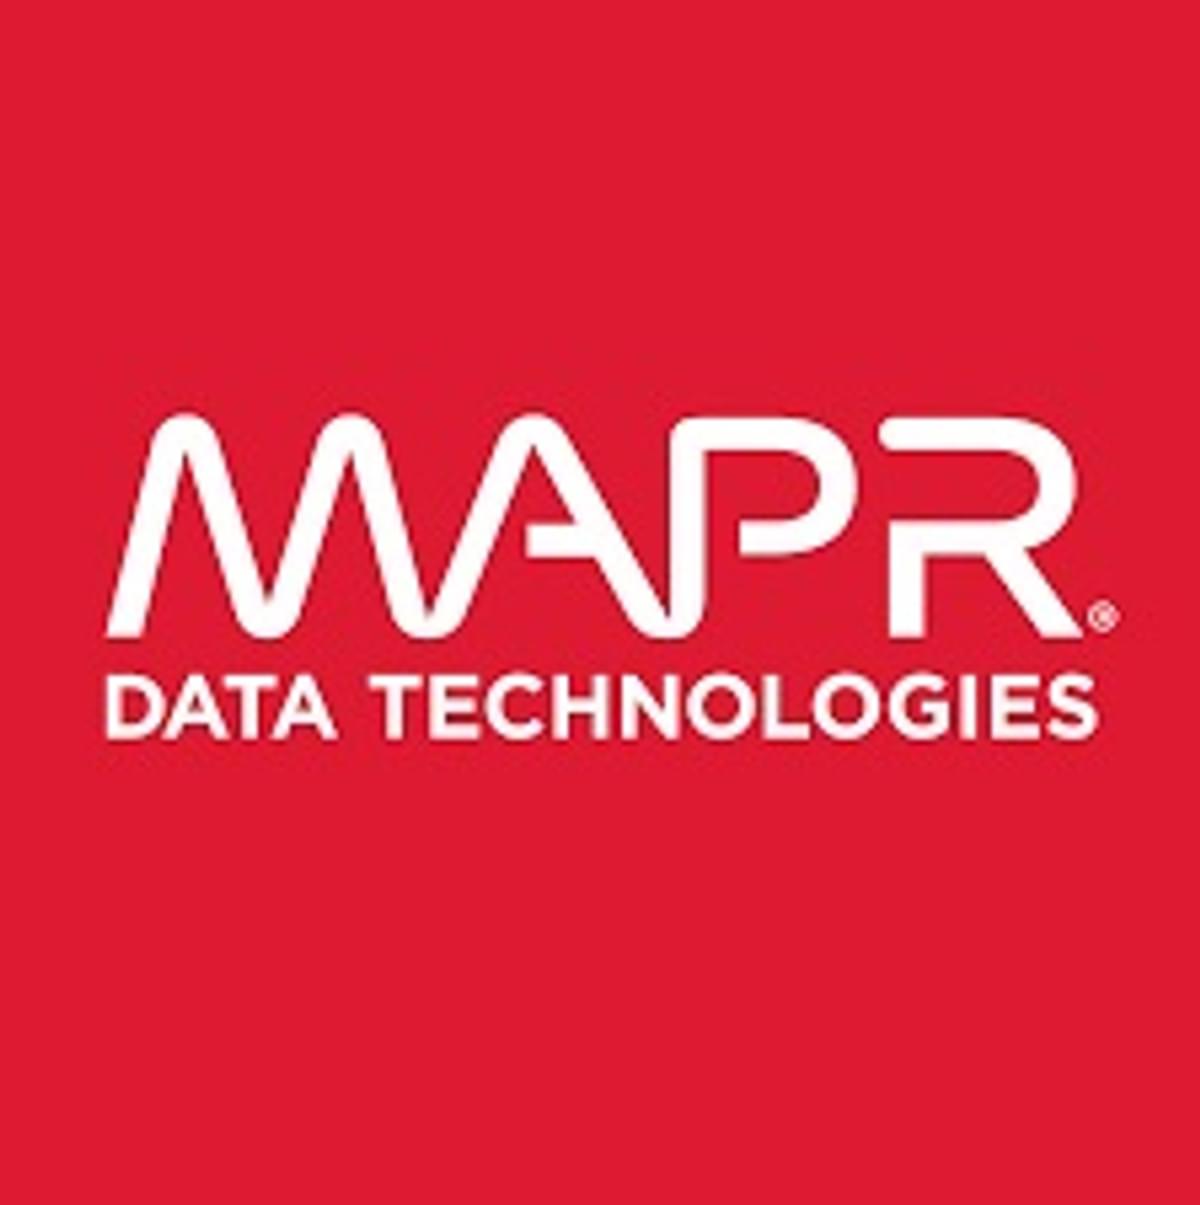 MapR Technologies moet reorganiseren en optimaliseren image